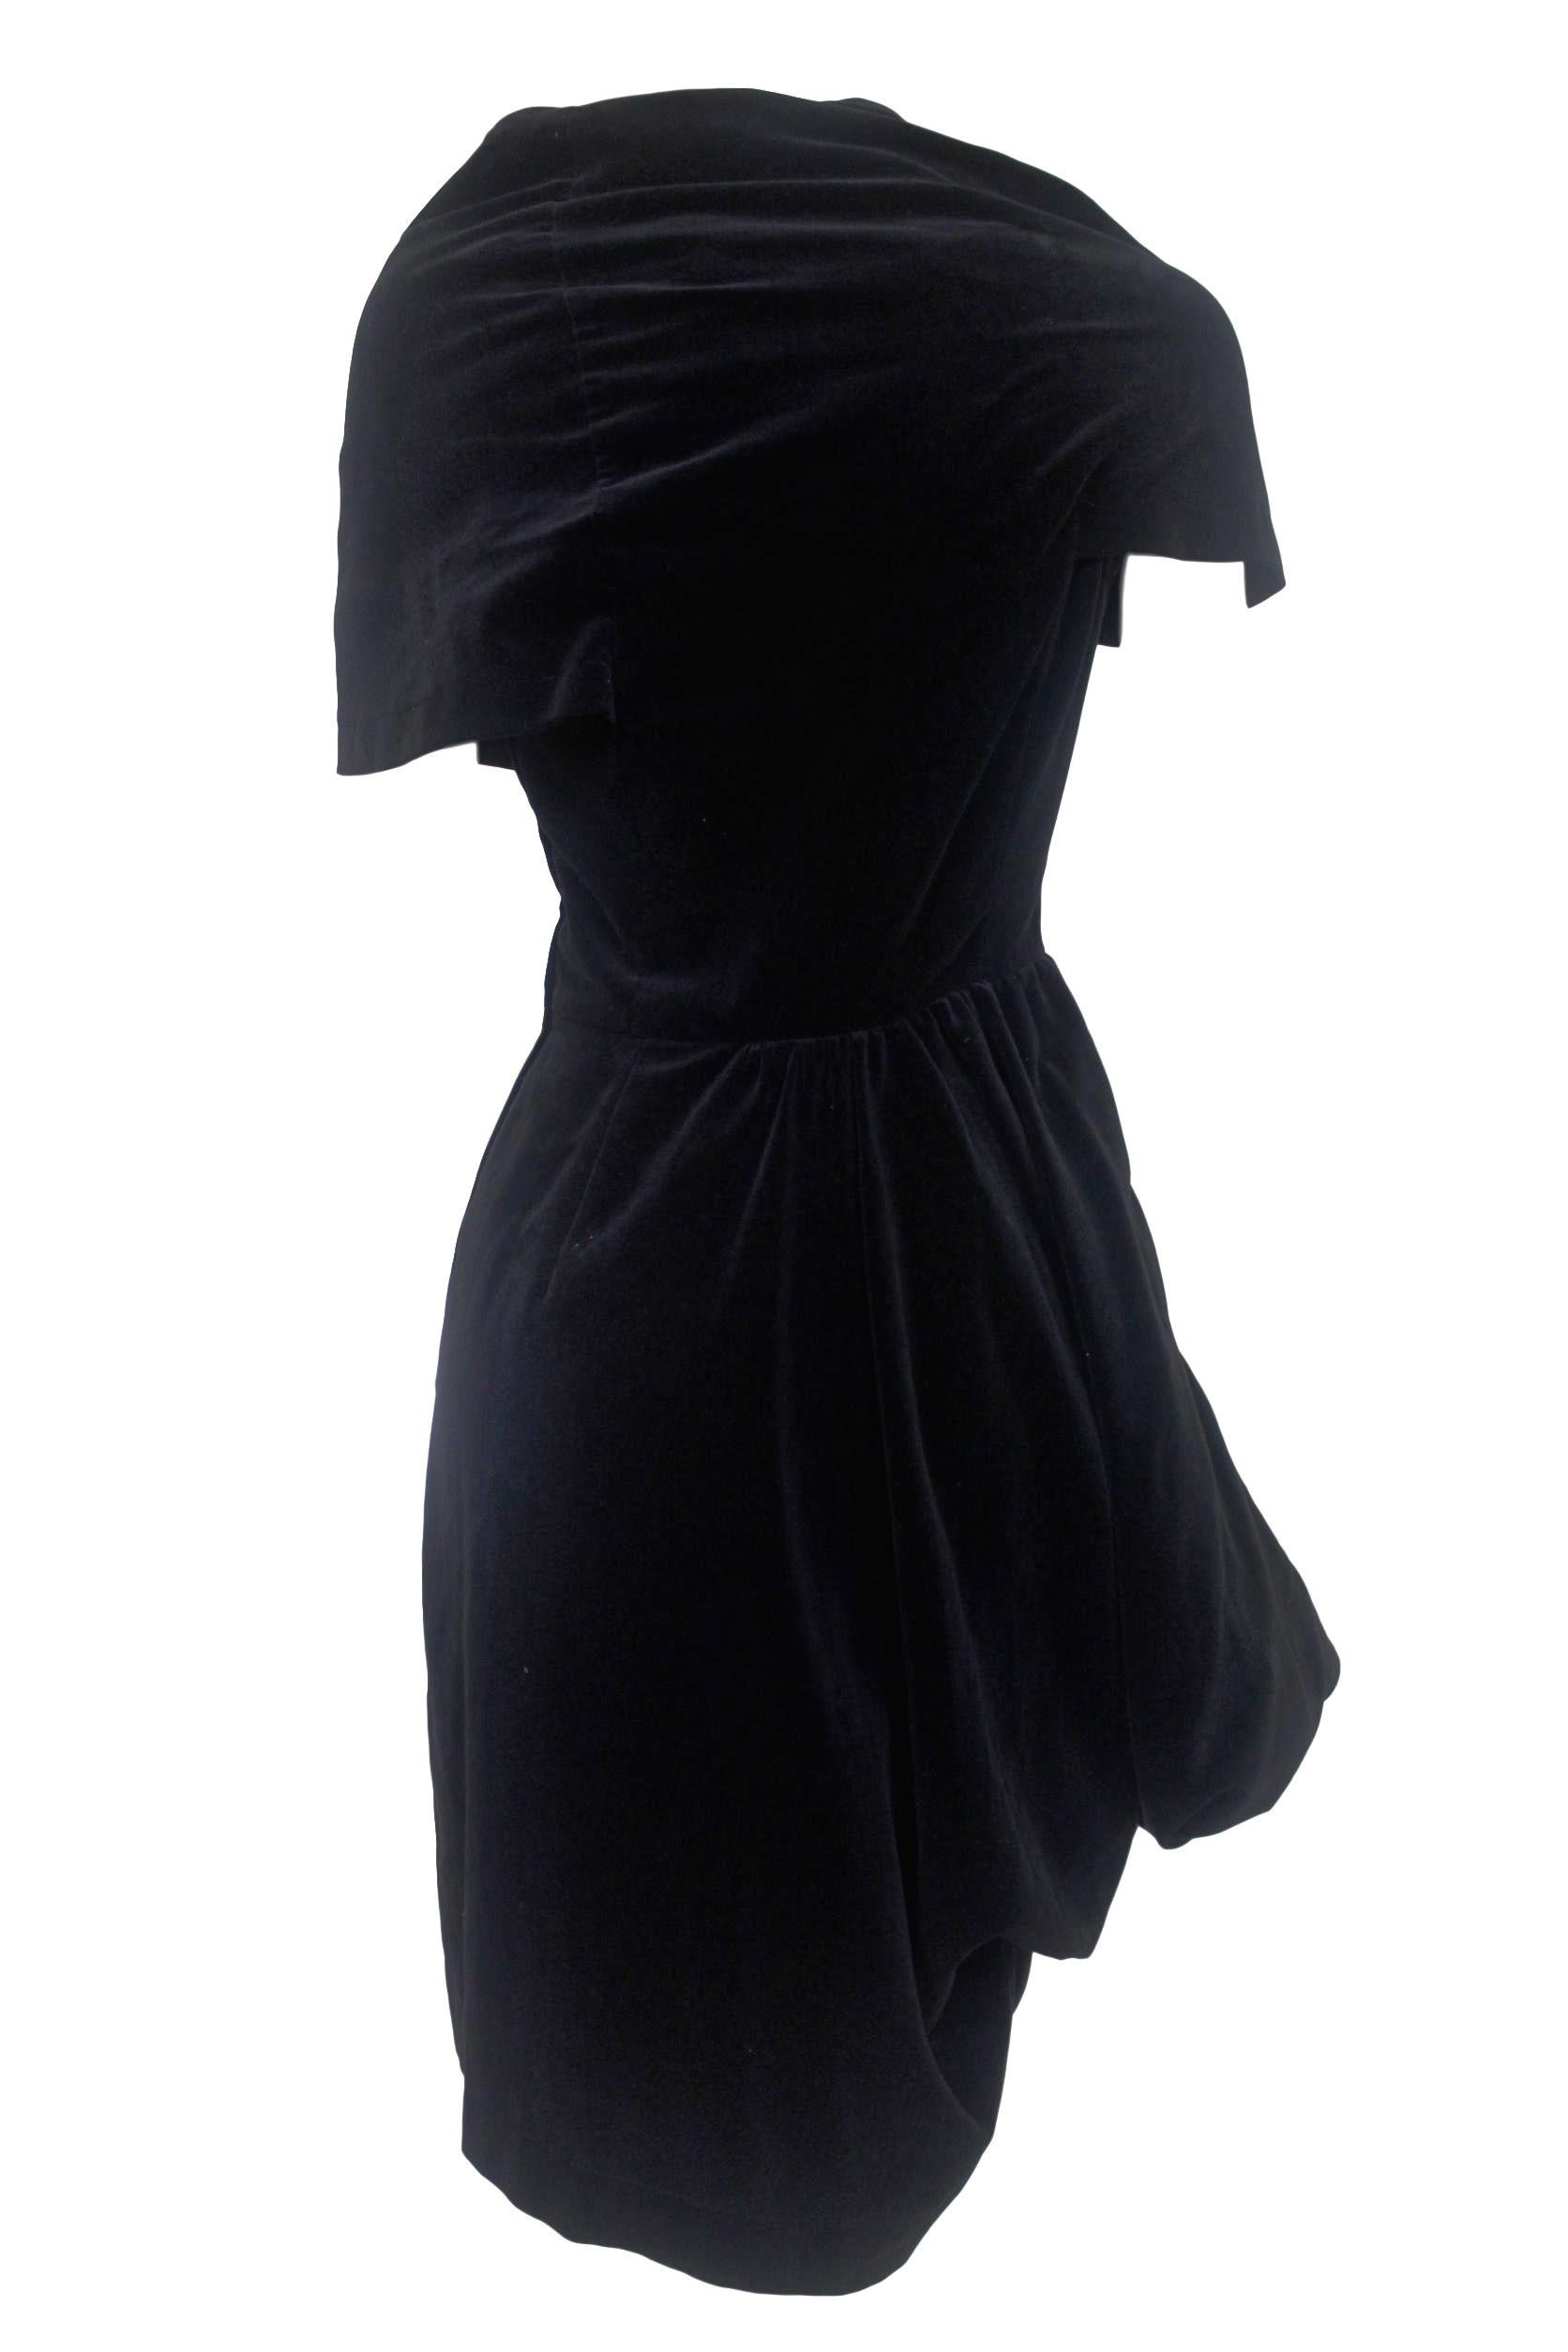 Comme des Garcons Noir Vintage  SS 1989 Dior Esque Cotton Velvet Dress  For Sale 9